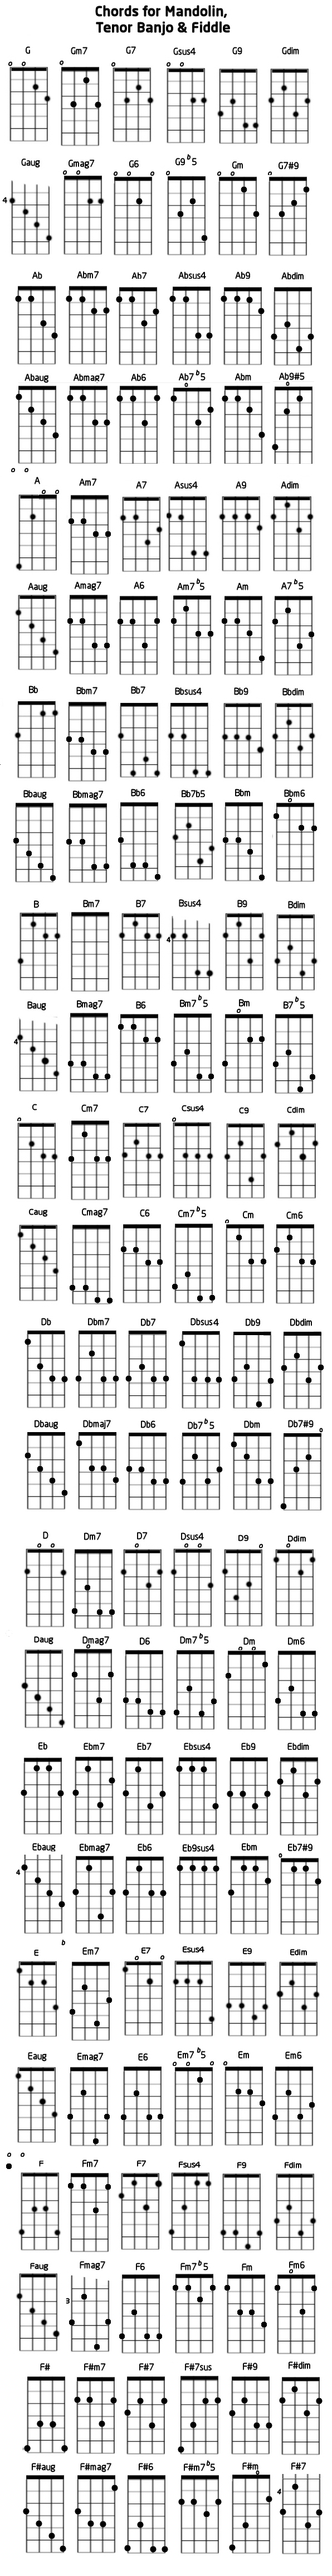 Gdae Chord Chart